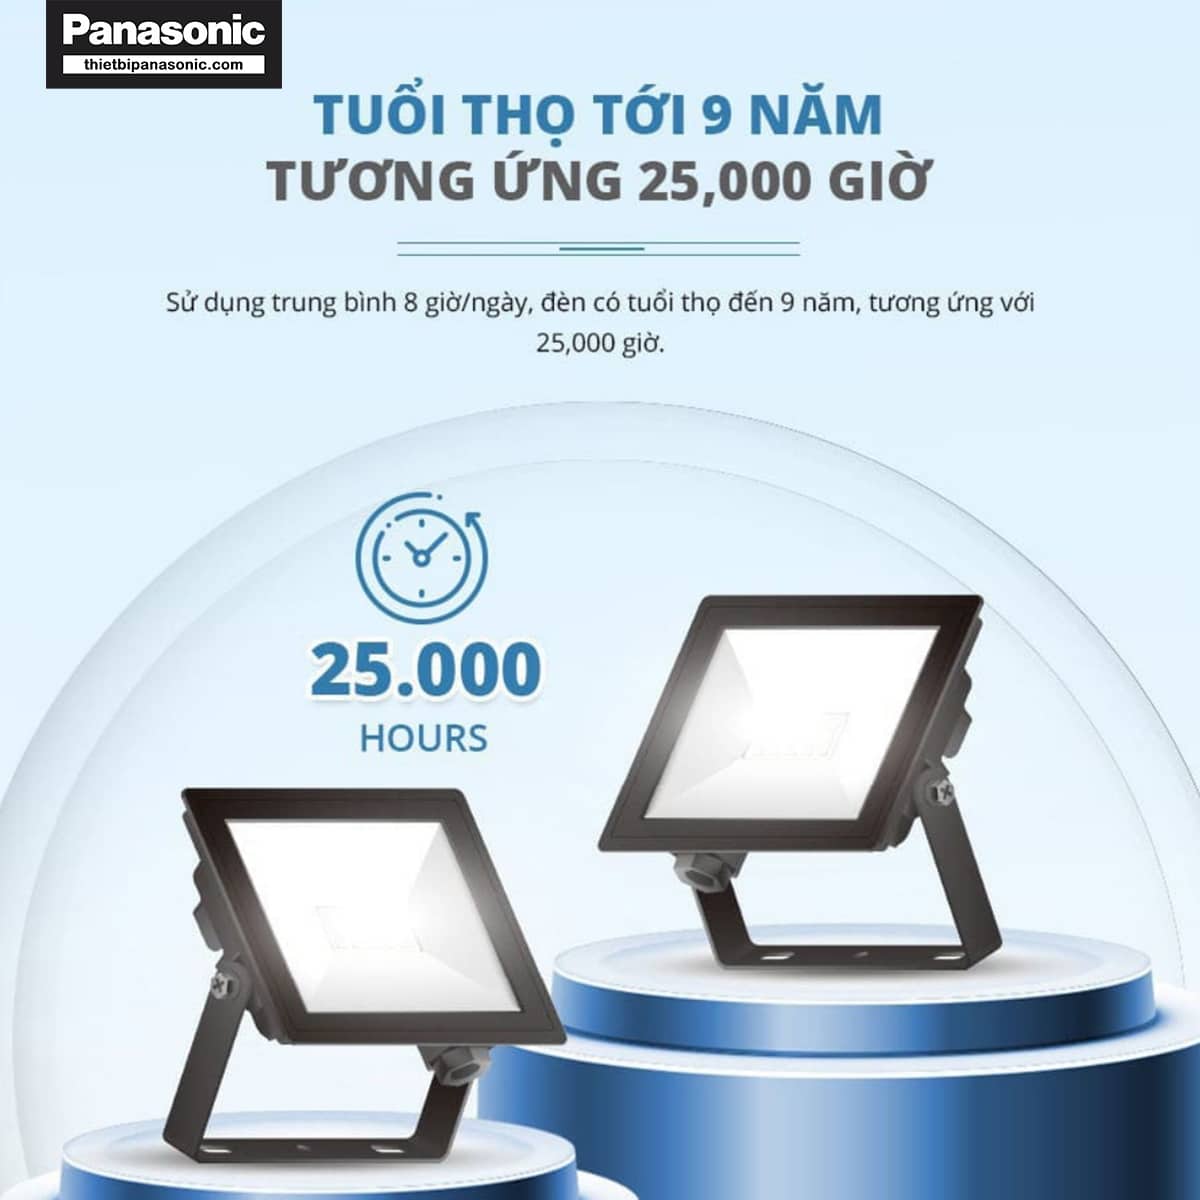 Đèn pha Panasonic có tuổi thọ lên đến 10 năm tương đương 30000 giờ sử dung (trung bình 8h/ngày)